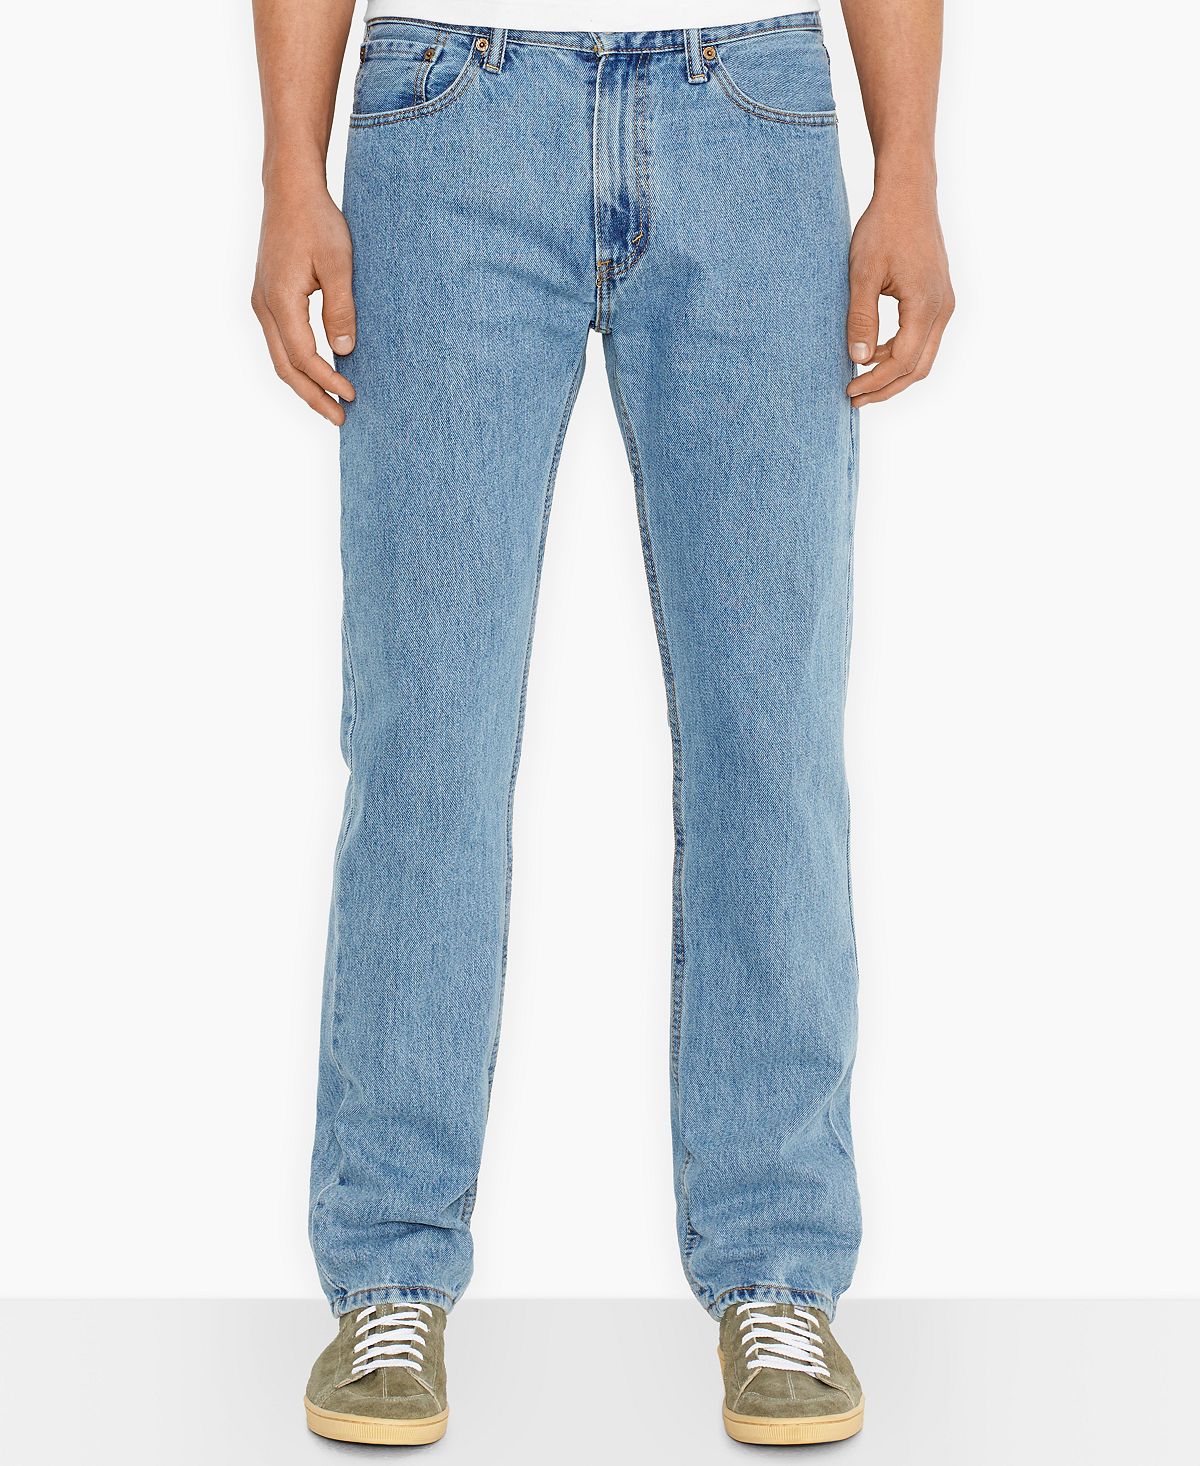 джинсы levi s 505 regular fit jean цвет roadie Мужские неэластичные джинсы прямого кроя 505 стандартного кроя Levi's, мульти